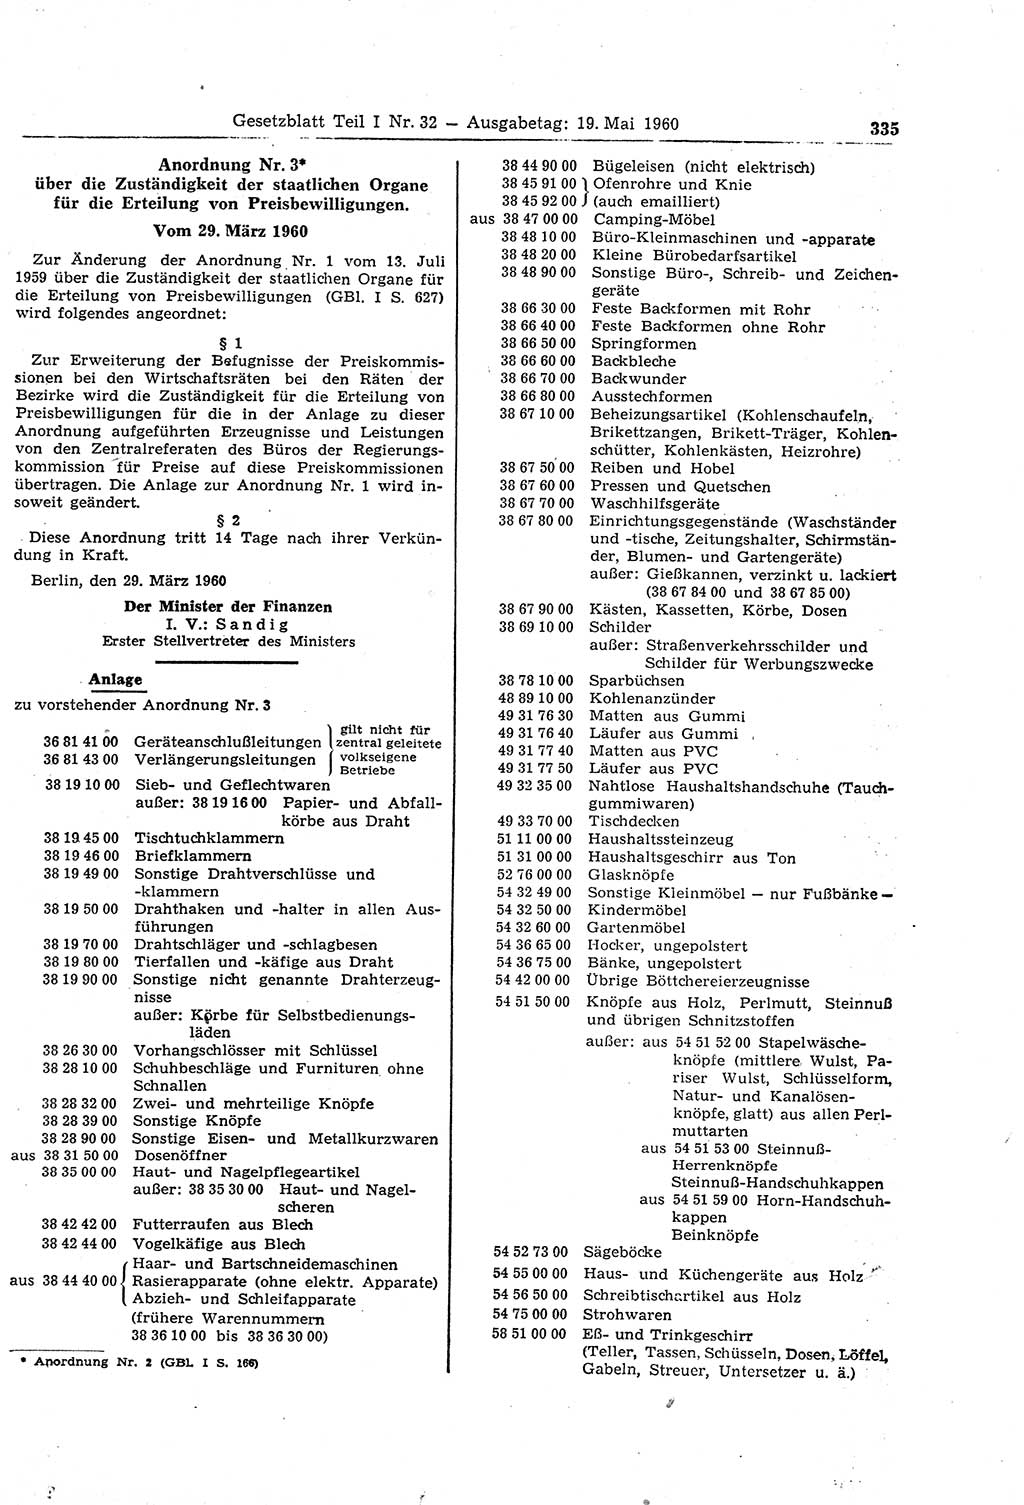 Gesetzblatt (GBl.) der Deutschen Demokratischen Republik (DDR) Teil Ⅰ 1960, Seite 335 (GBl. DDR Ⅰ 1960, S. 335)